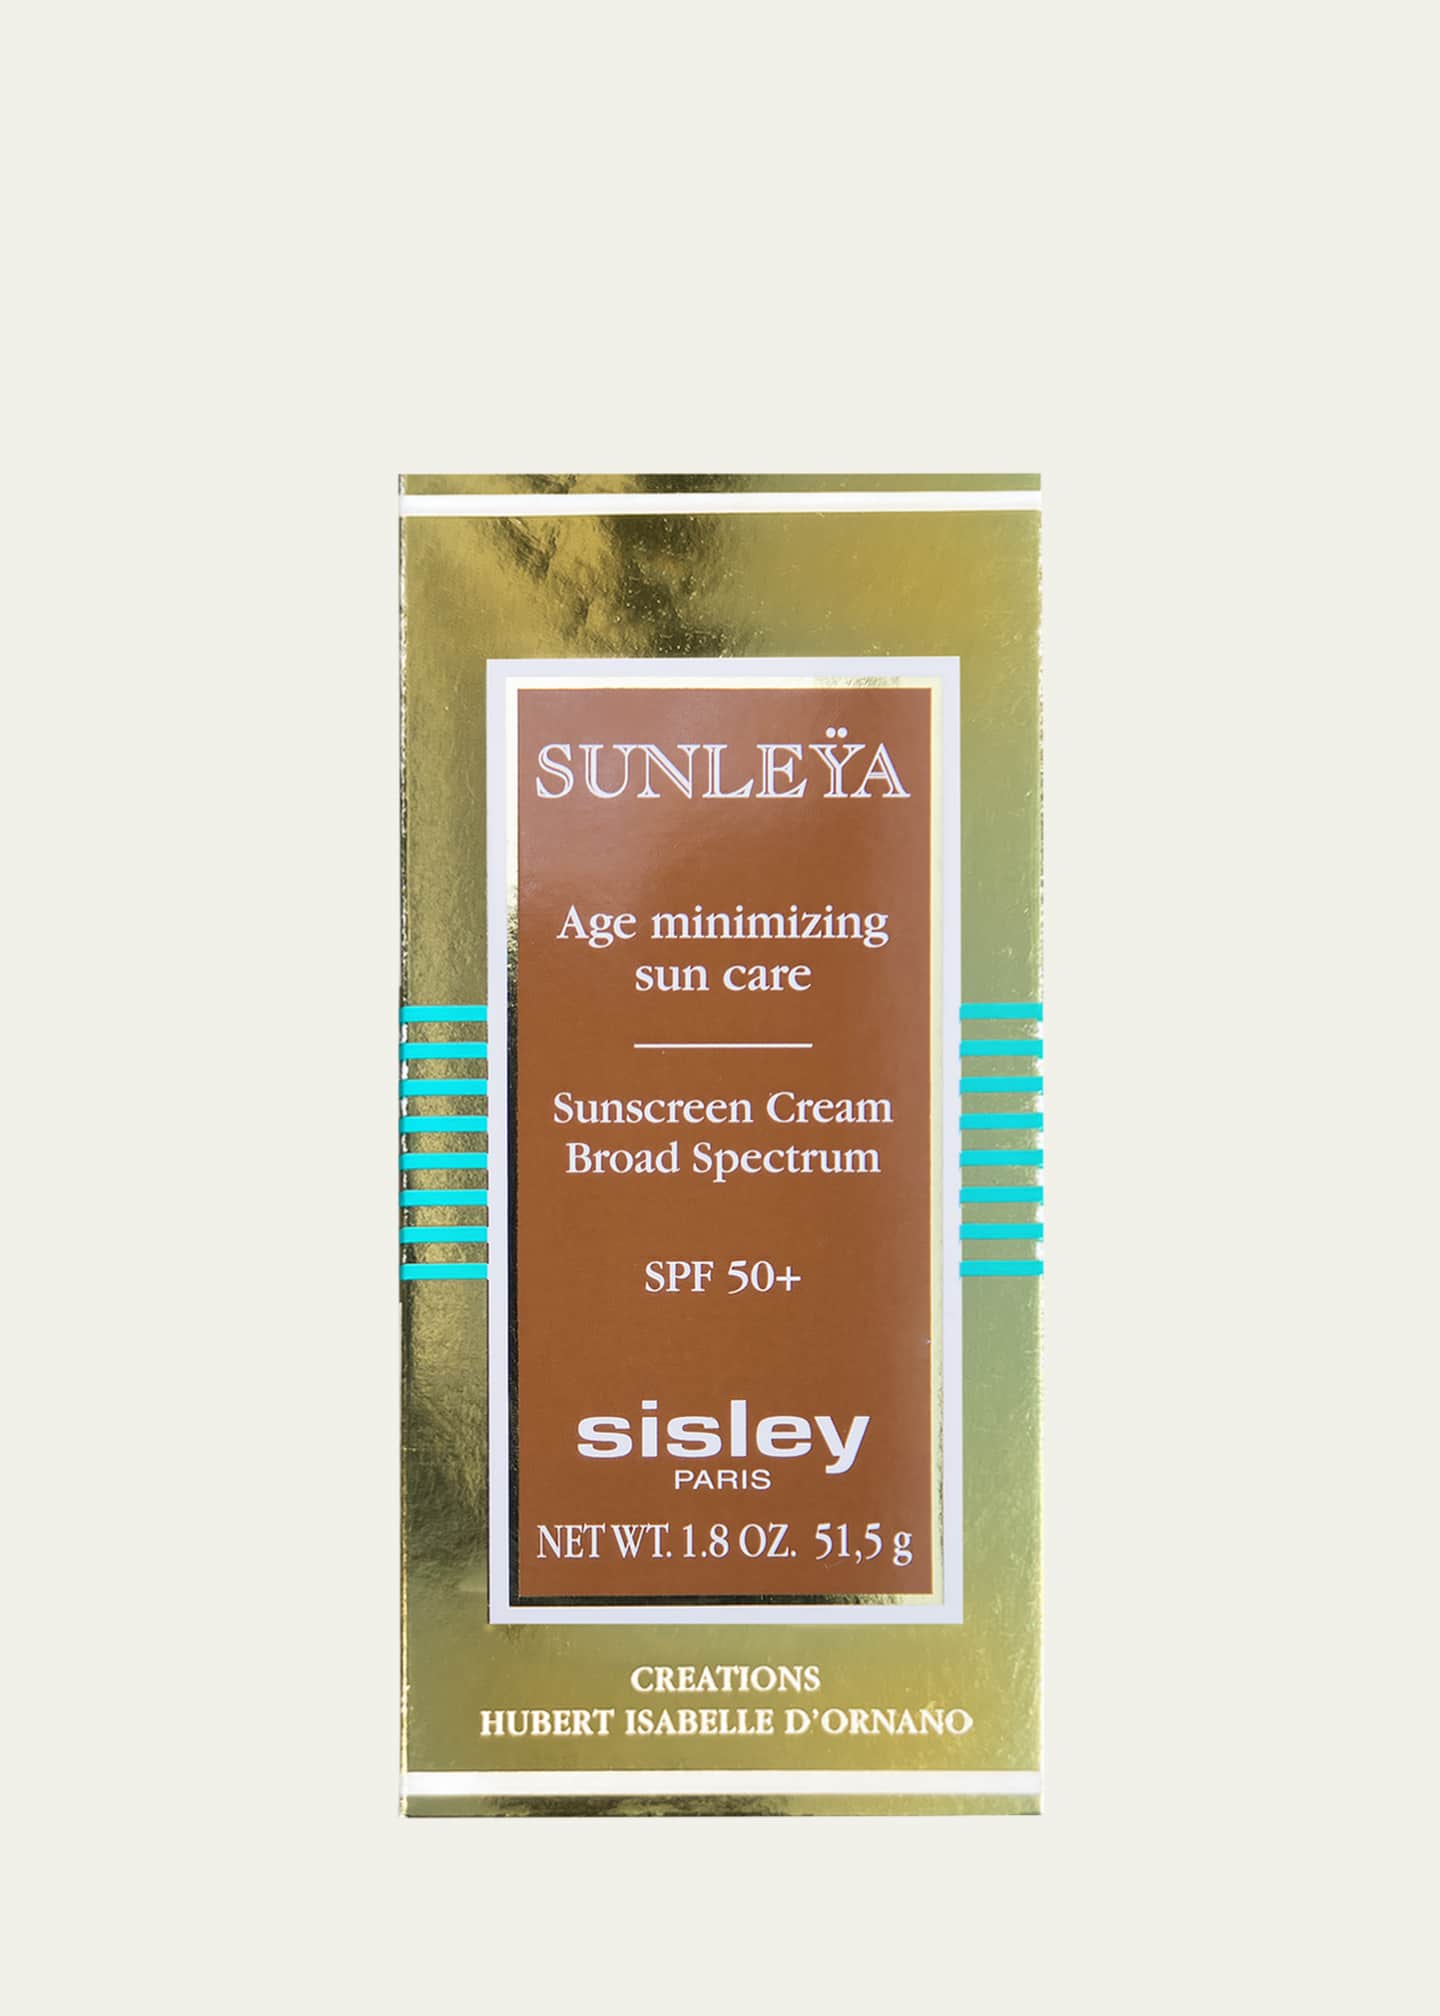 Sisley-Paris Sunleÿa SPF 50+ Image 2 of 2